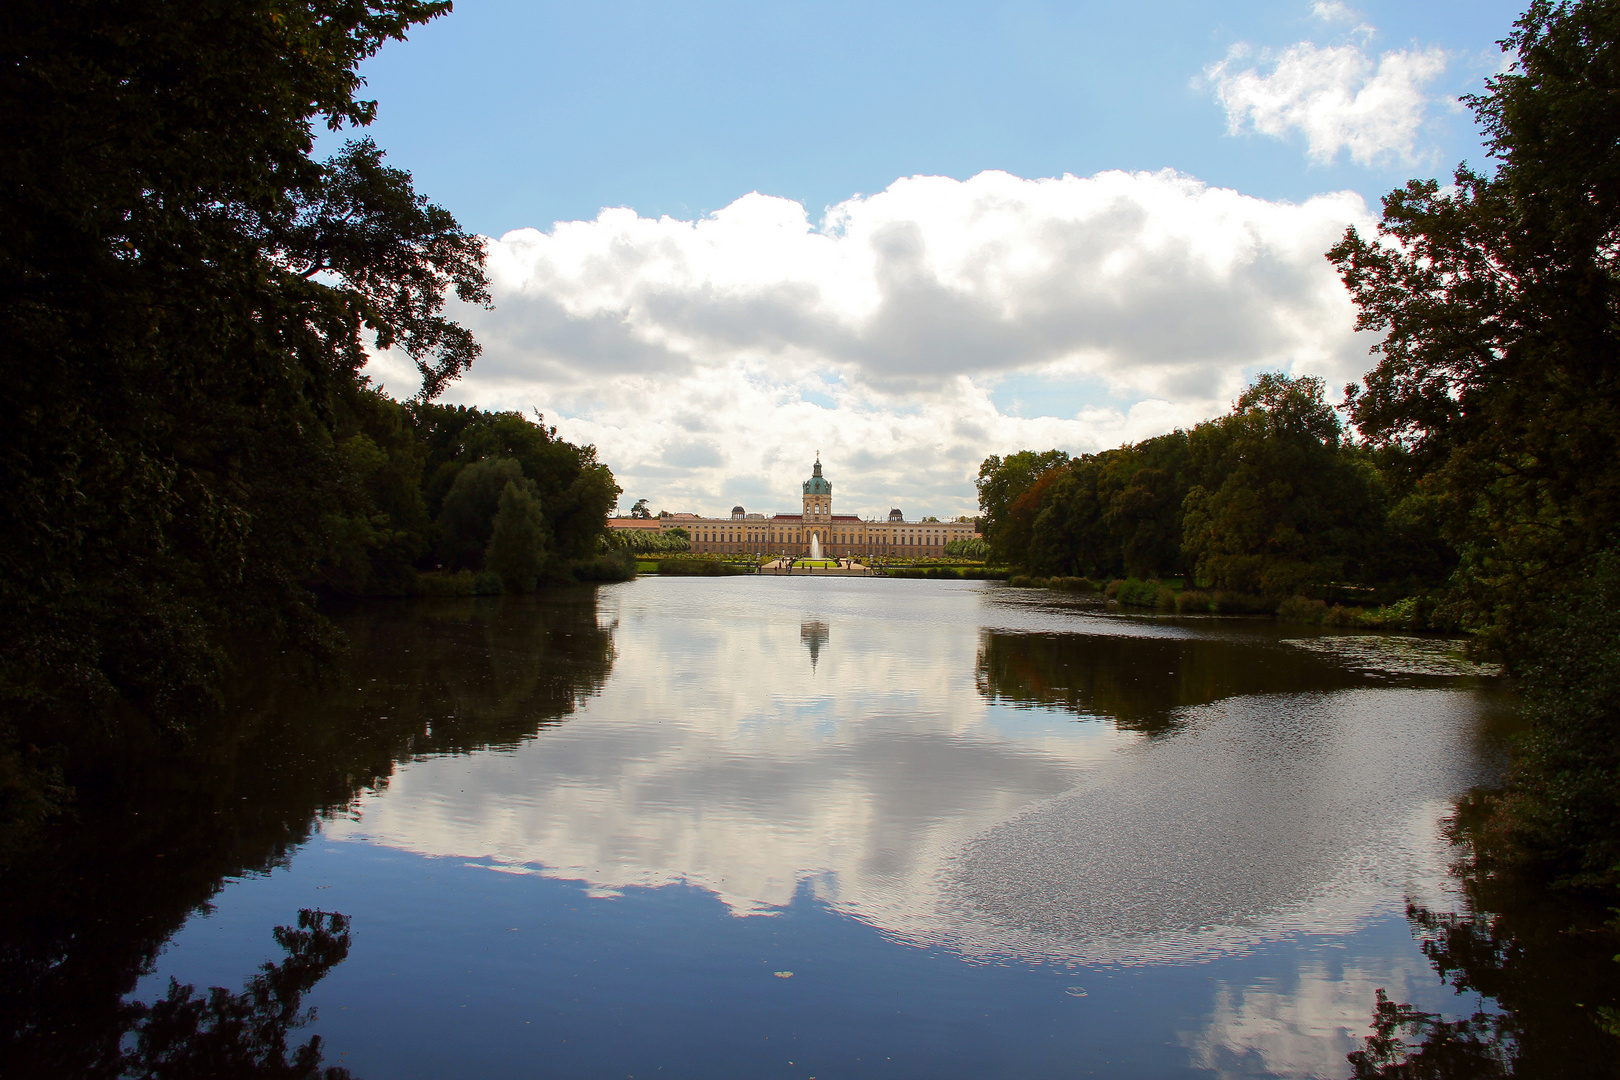 Das Schloss Charlottenburg in Mitten eines wunderschönen Parks